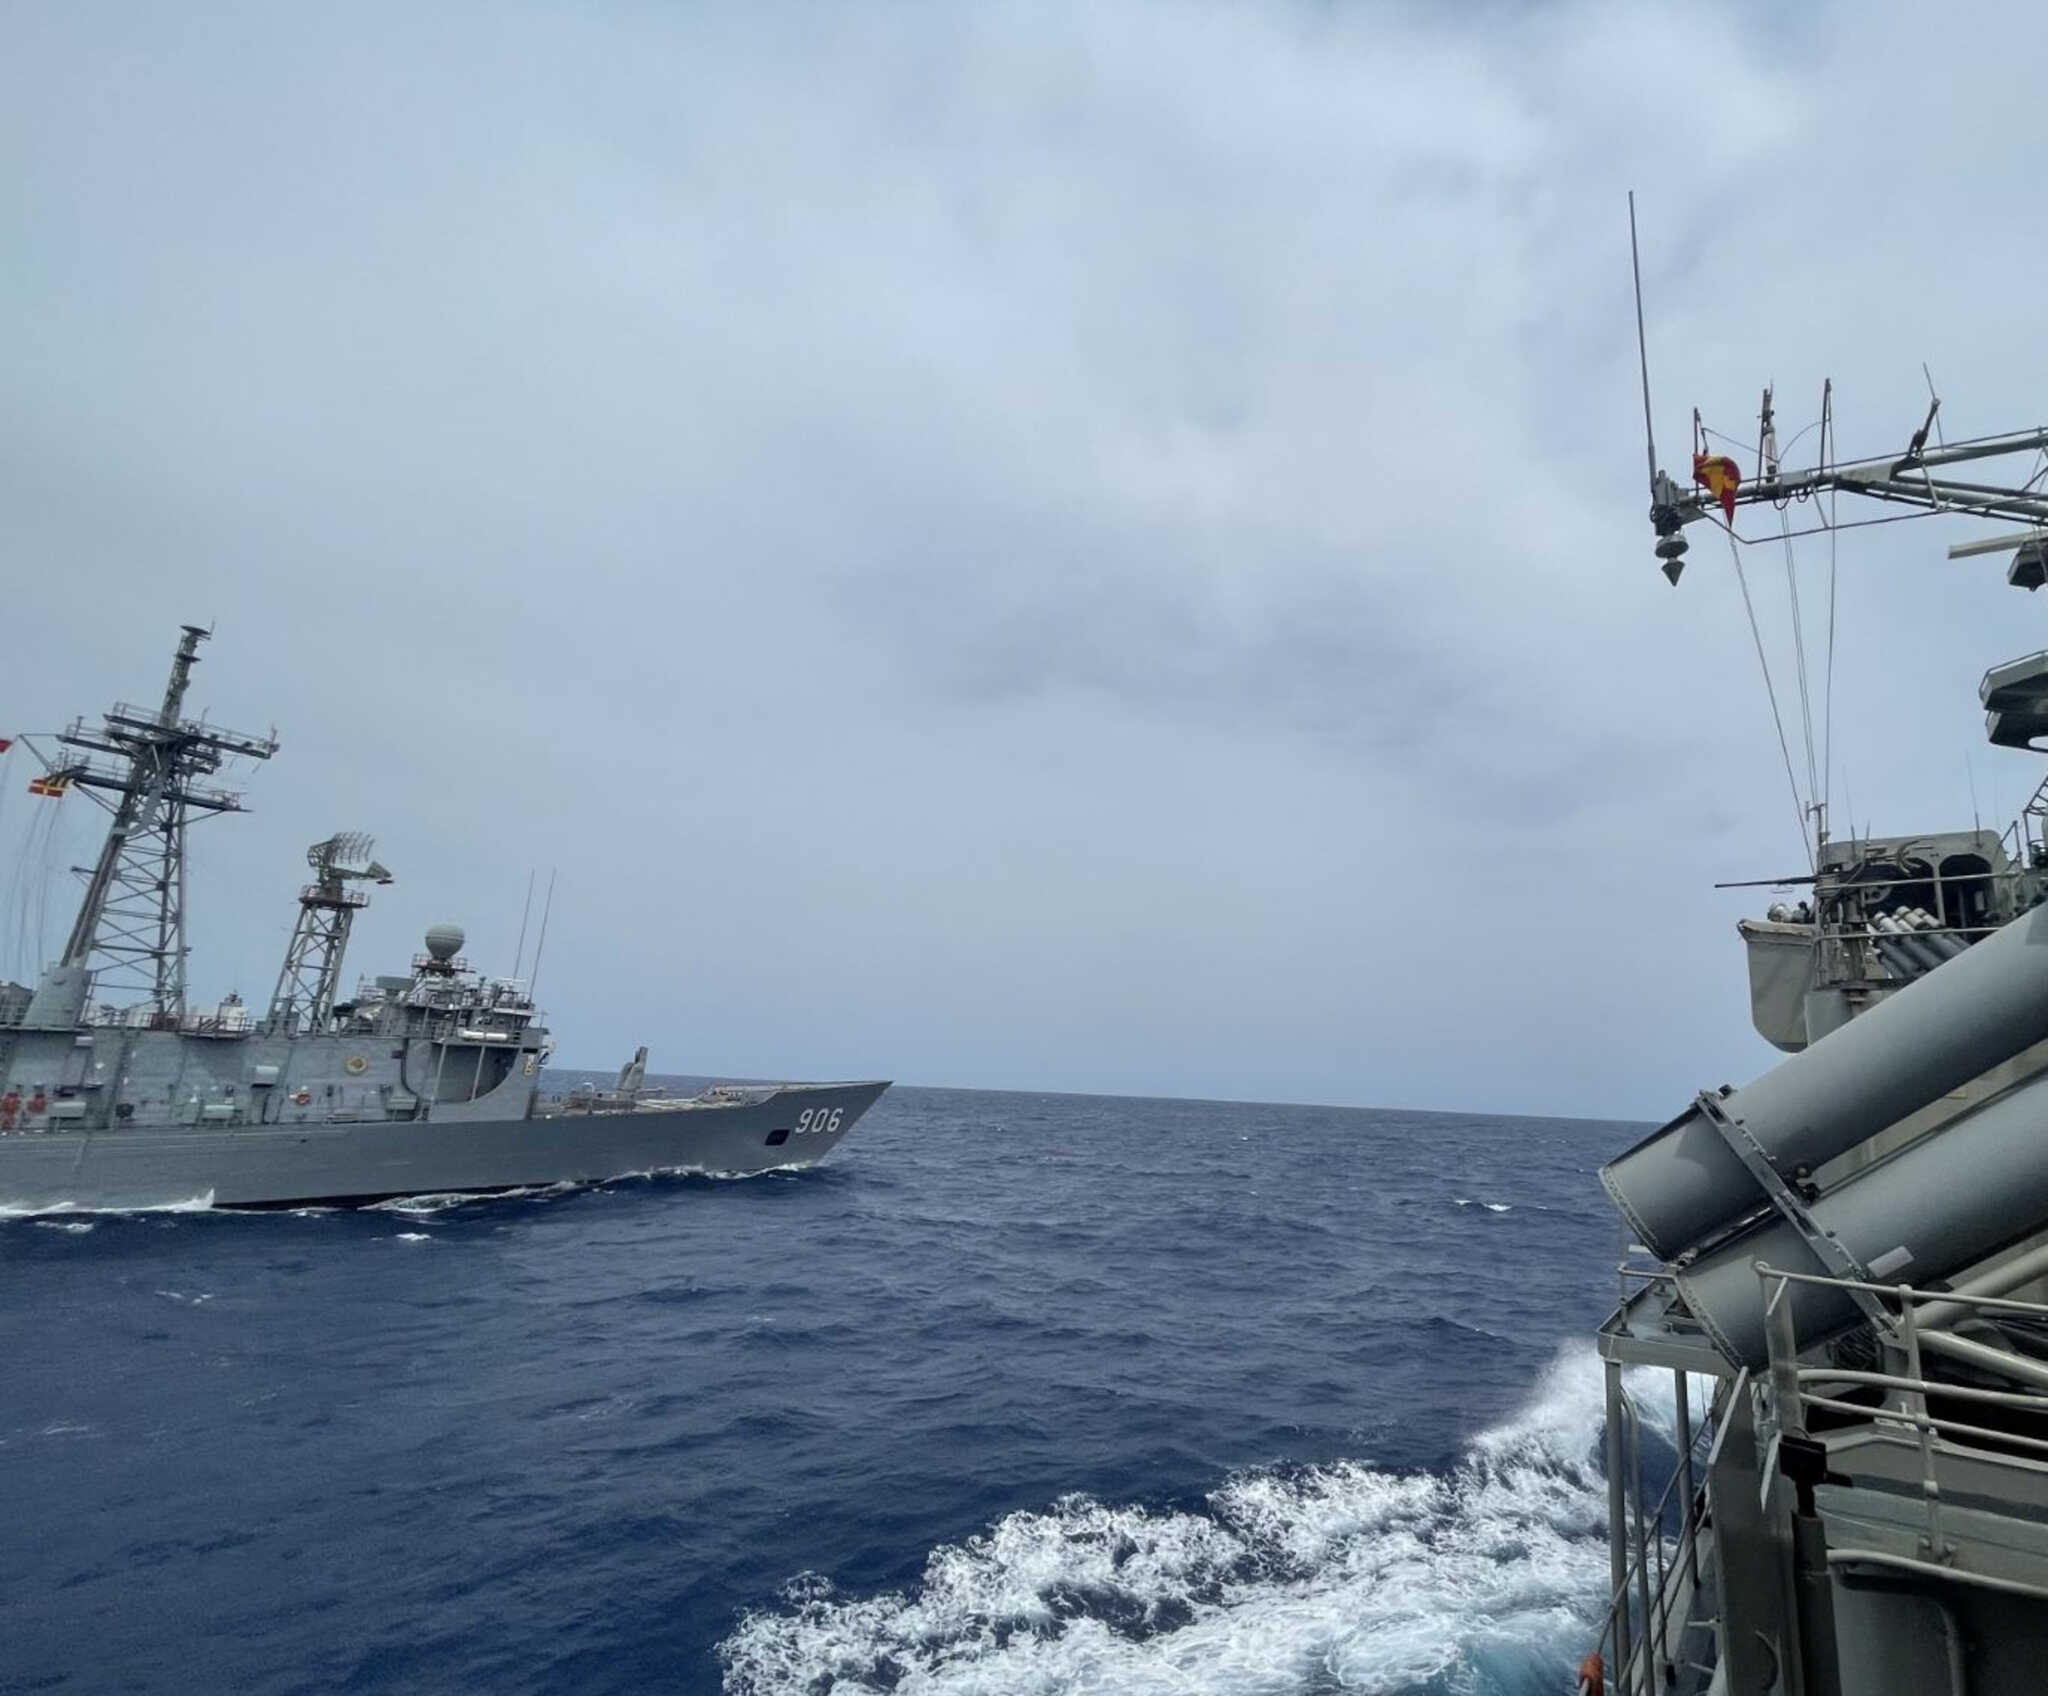 Τουρκικά ΜΜΕ: Πολεμικά πλοία της Ελλάδας και της Τουρκίας αντιμέτωπα και πάλι στην Ανατολική Μεσόγειο